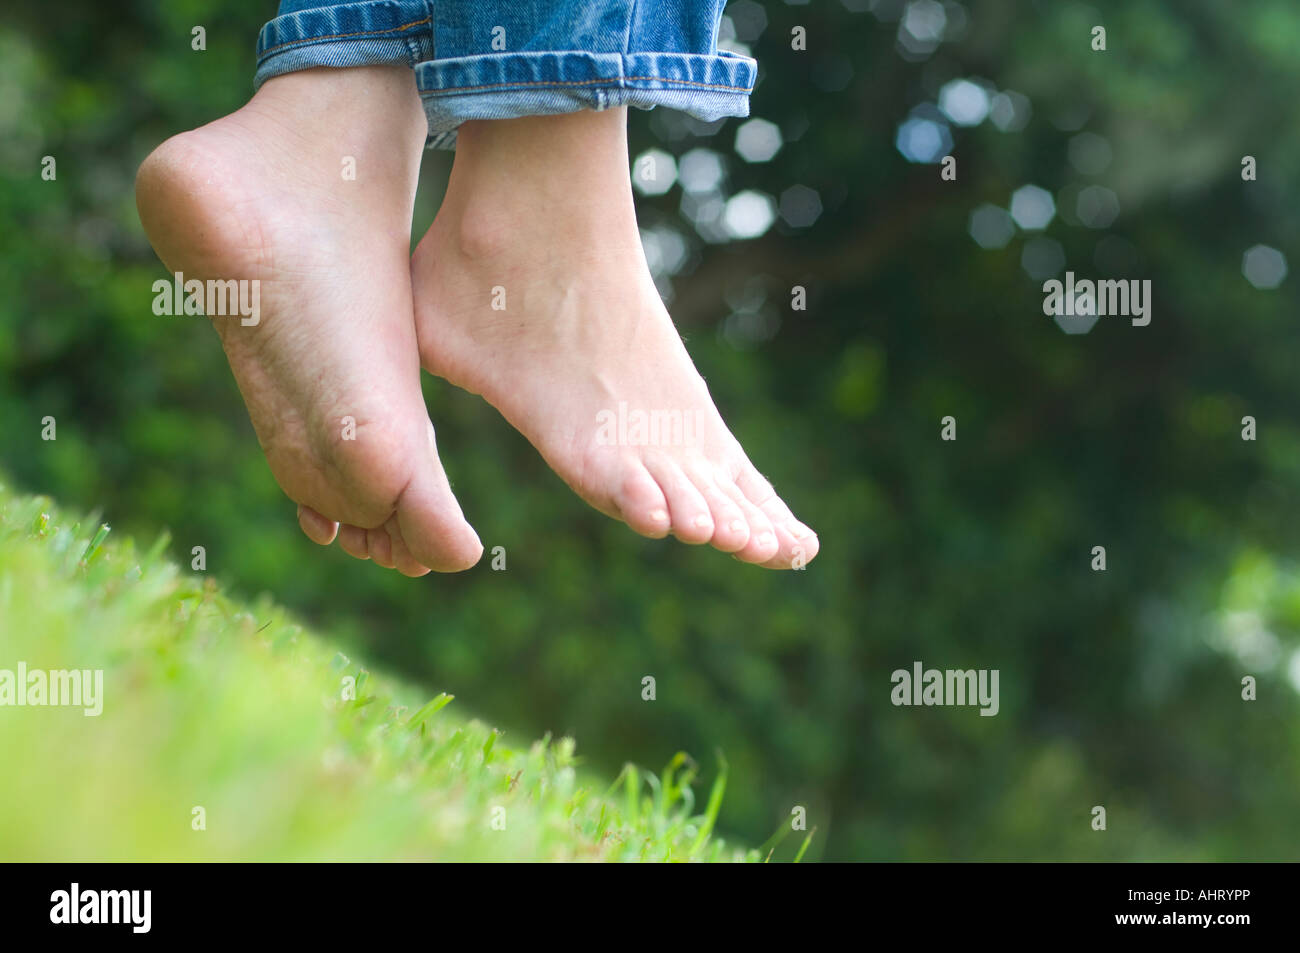 Junges Mädchen Mit Nackten Füßen Auf Dem Rasen Stockfotografie Alamy